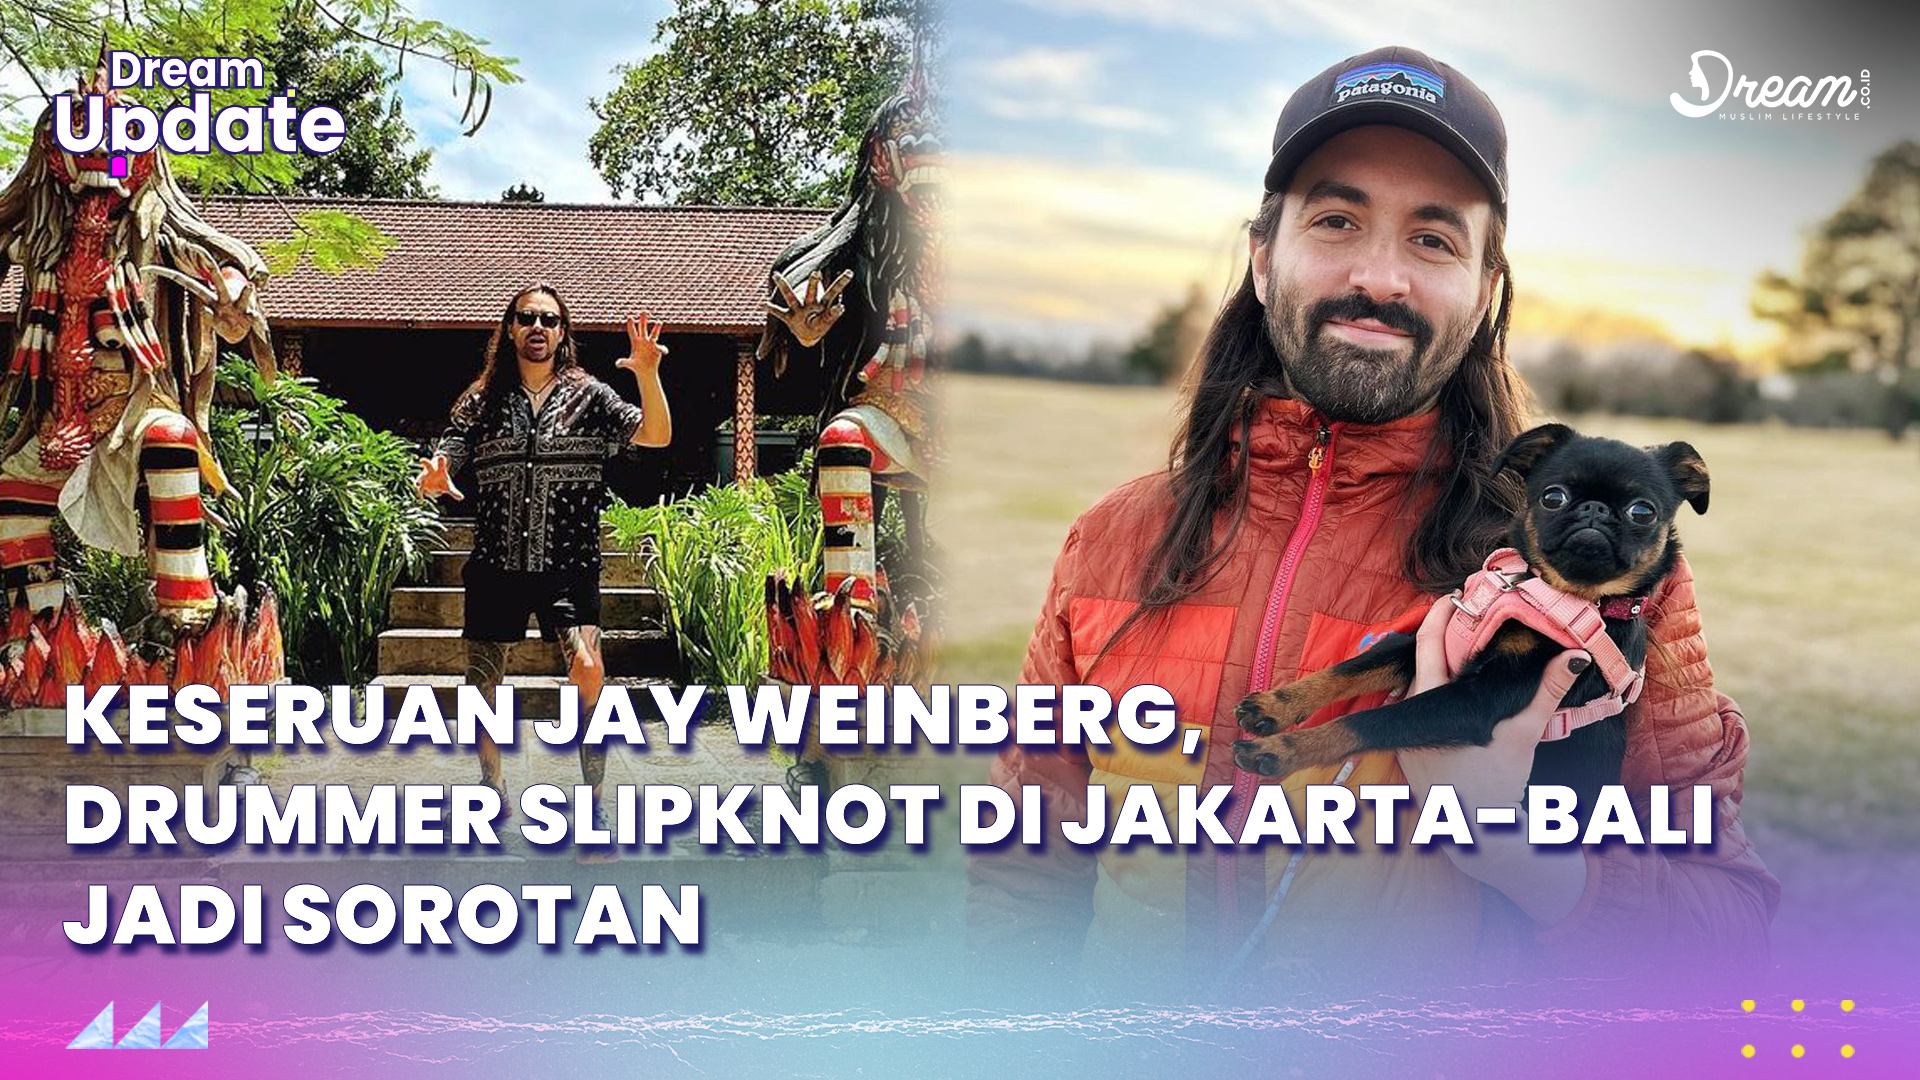 Keseruan Jay Weinberg, Drummer Slipknot ke Jakarta dan Bali